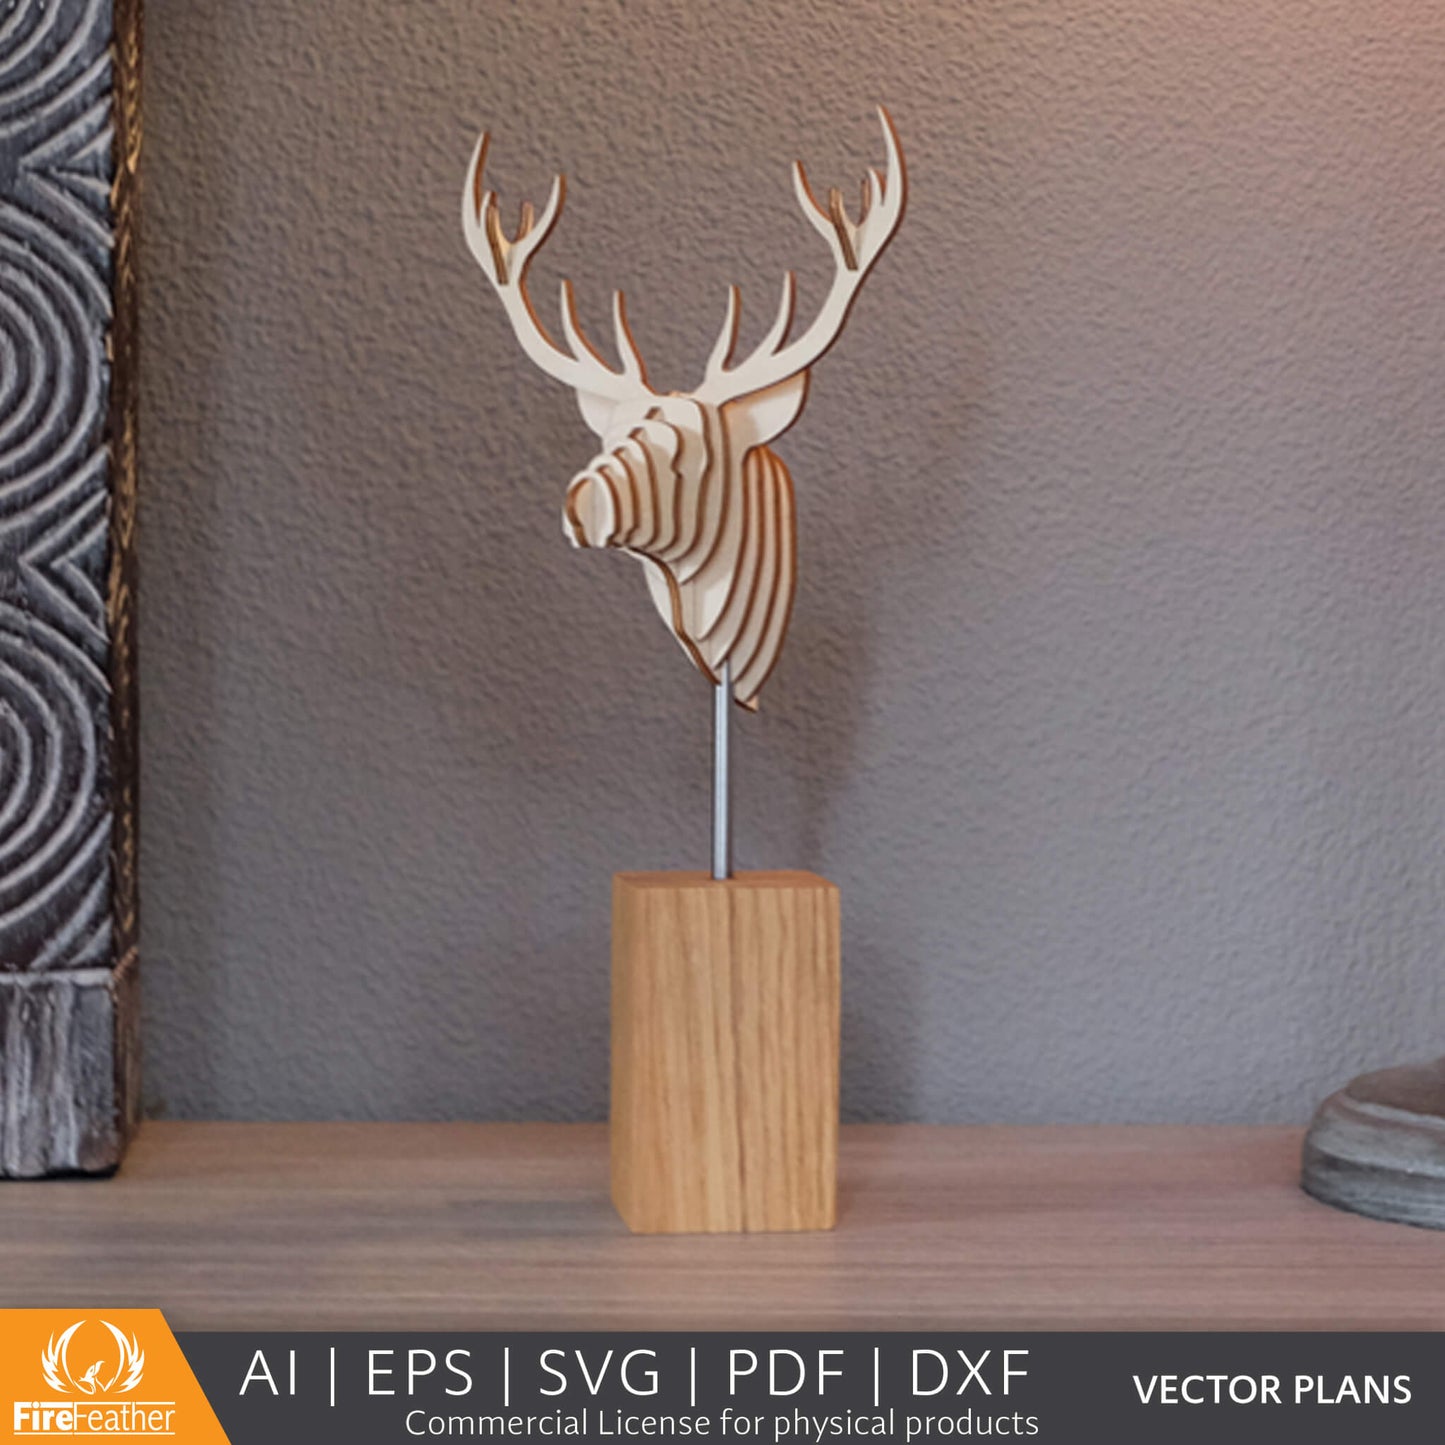 Deer Statue DIY vector project file - (Direct Download)